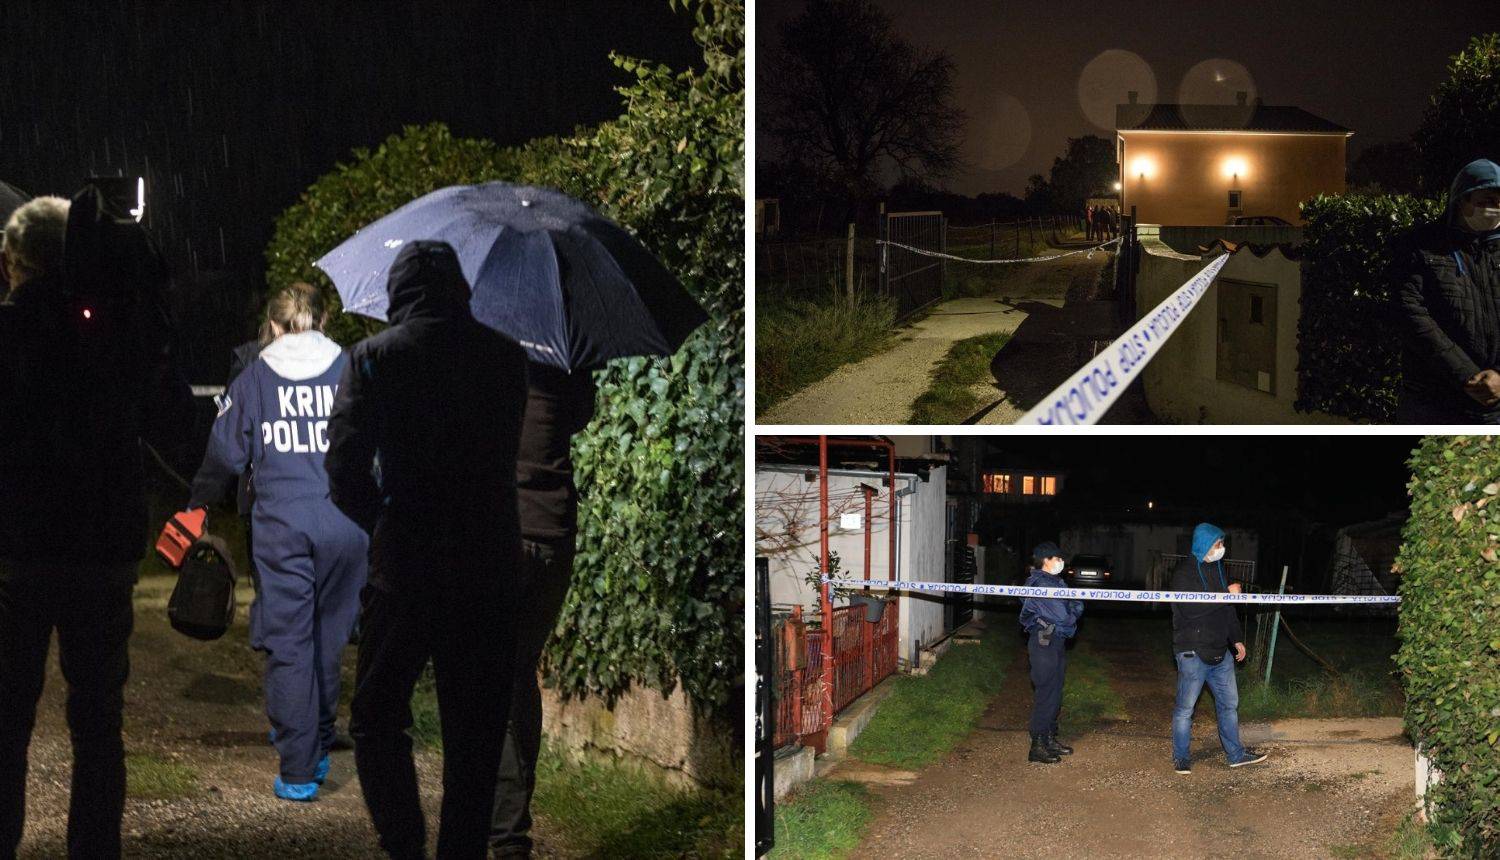 Policija o brutalnom zločinu kod Pule: Nožem napao bivšu ženu, sumnjiče ga za teško ubojstvo